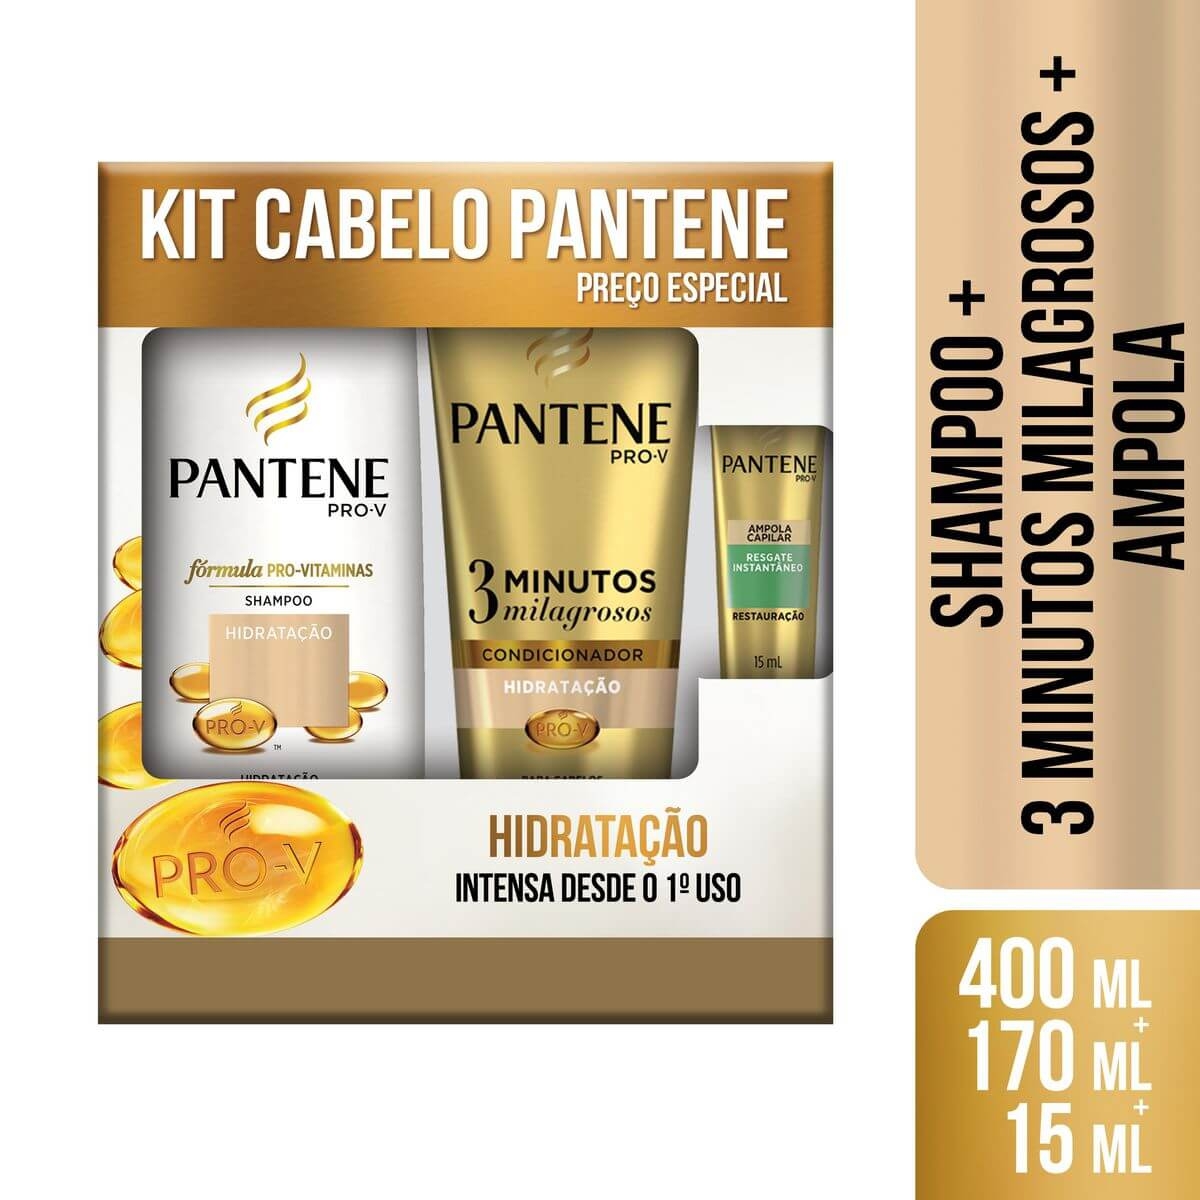 Pantene Kit Shampoo Hidratação + Condicionador 3 Minutos Milagrosos Hidratação + mpola Restauração Grátis 1 Unidade